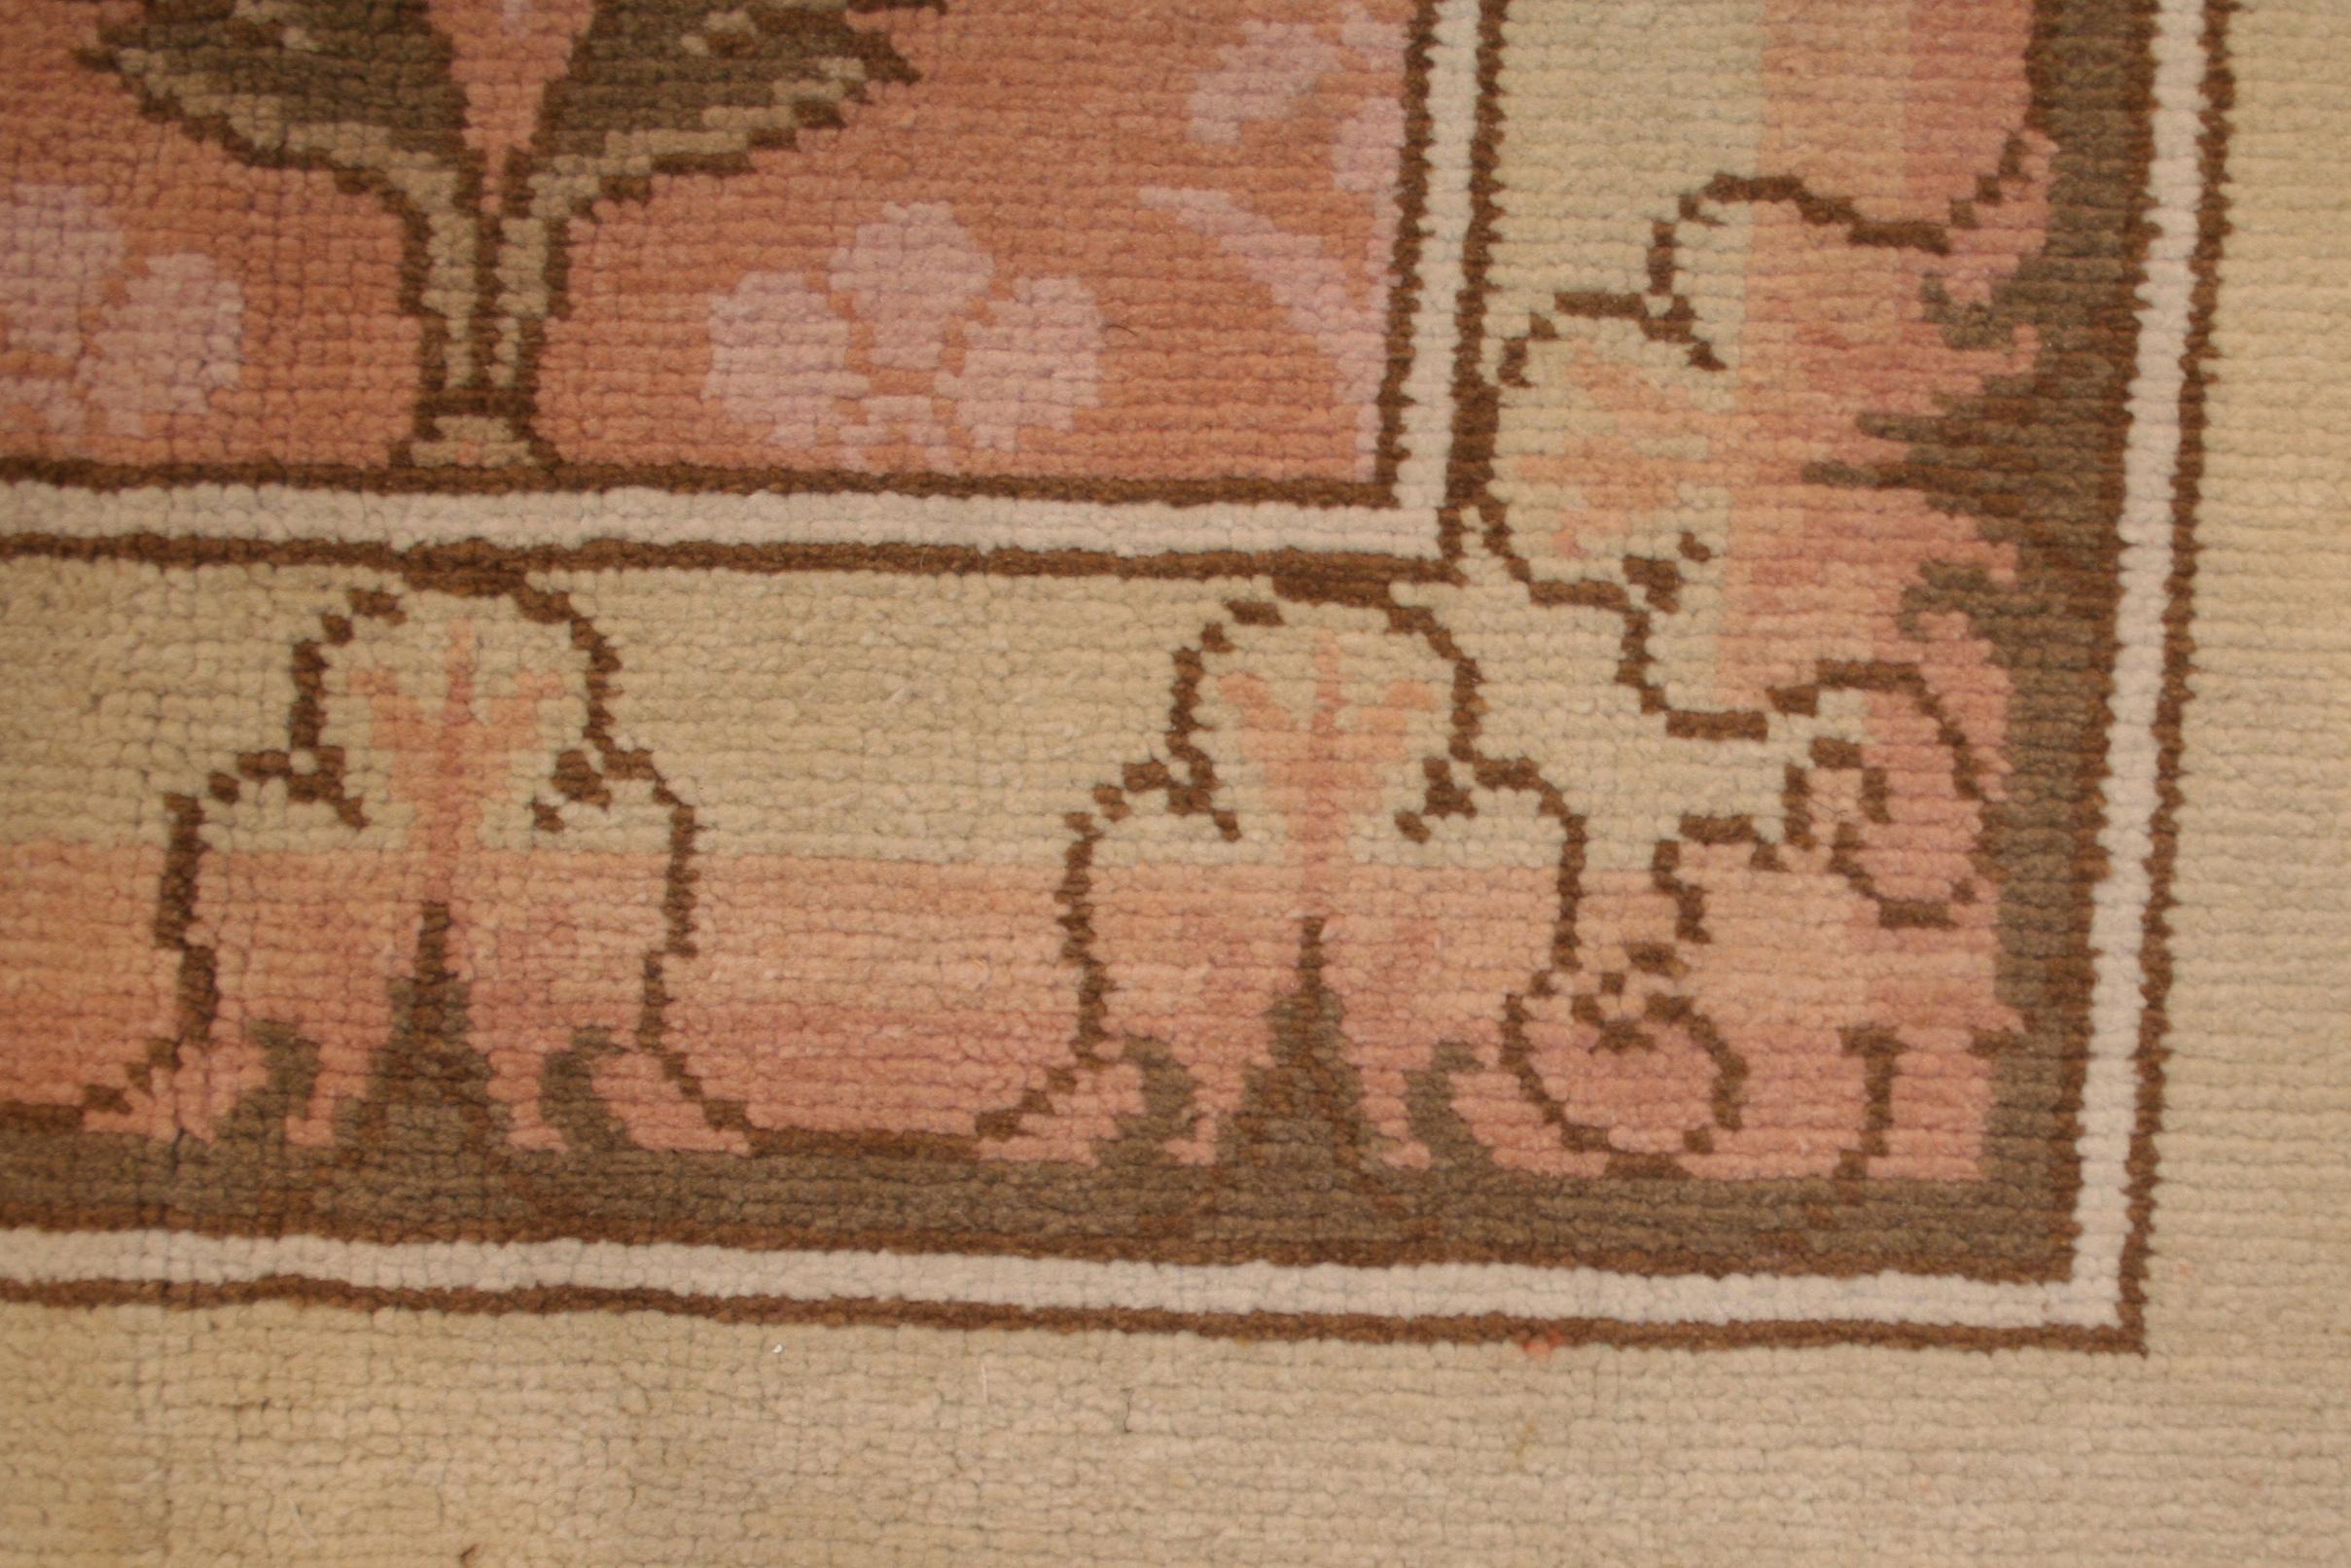 Nach der Schließung der Manufaktur in Axminster in Devonshire im Jahr 1835 wurde die Nachfrage nach Blumenteppichen im Stil des Rokoko-Revivals von der Wilton Royal Carpet Factory in Salisbury befriedigt, obwohl die Bezeichnung 